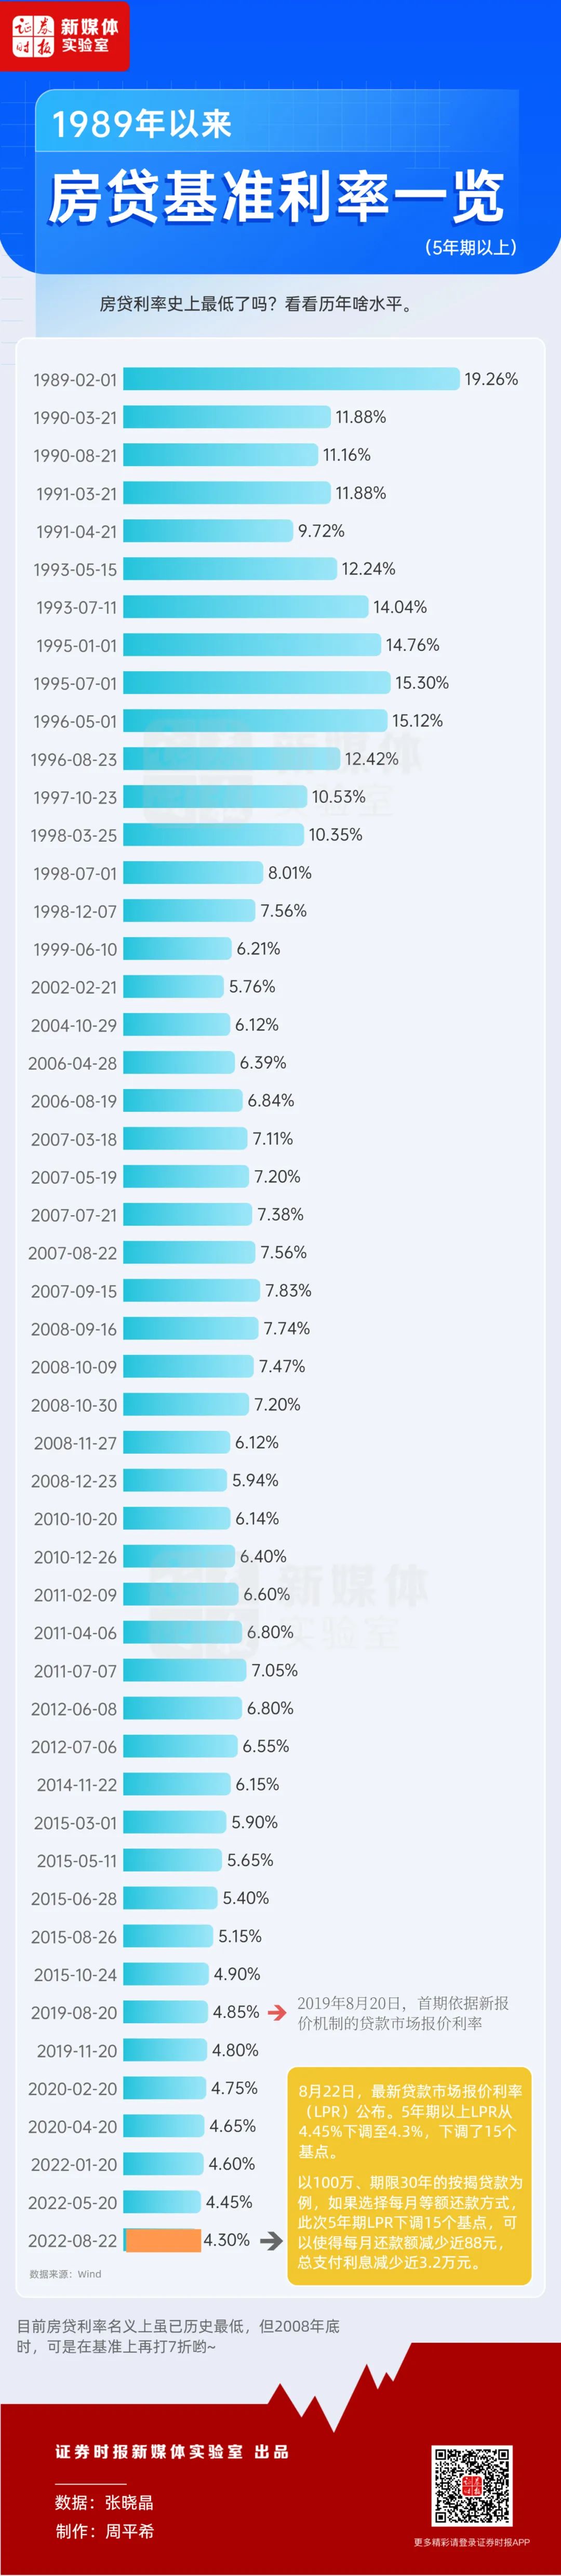 历年房贷利率一览表，涨知识!房贷利率史上最低了吗?一图看懂历年啥水平  第1张